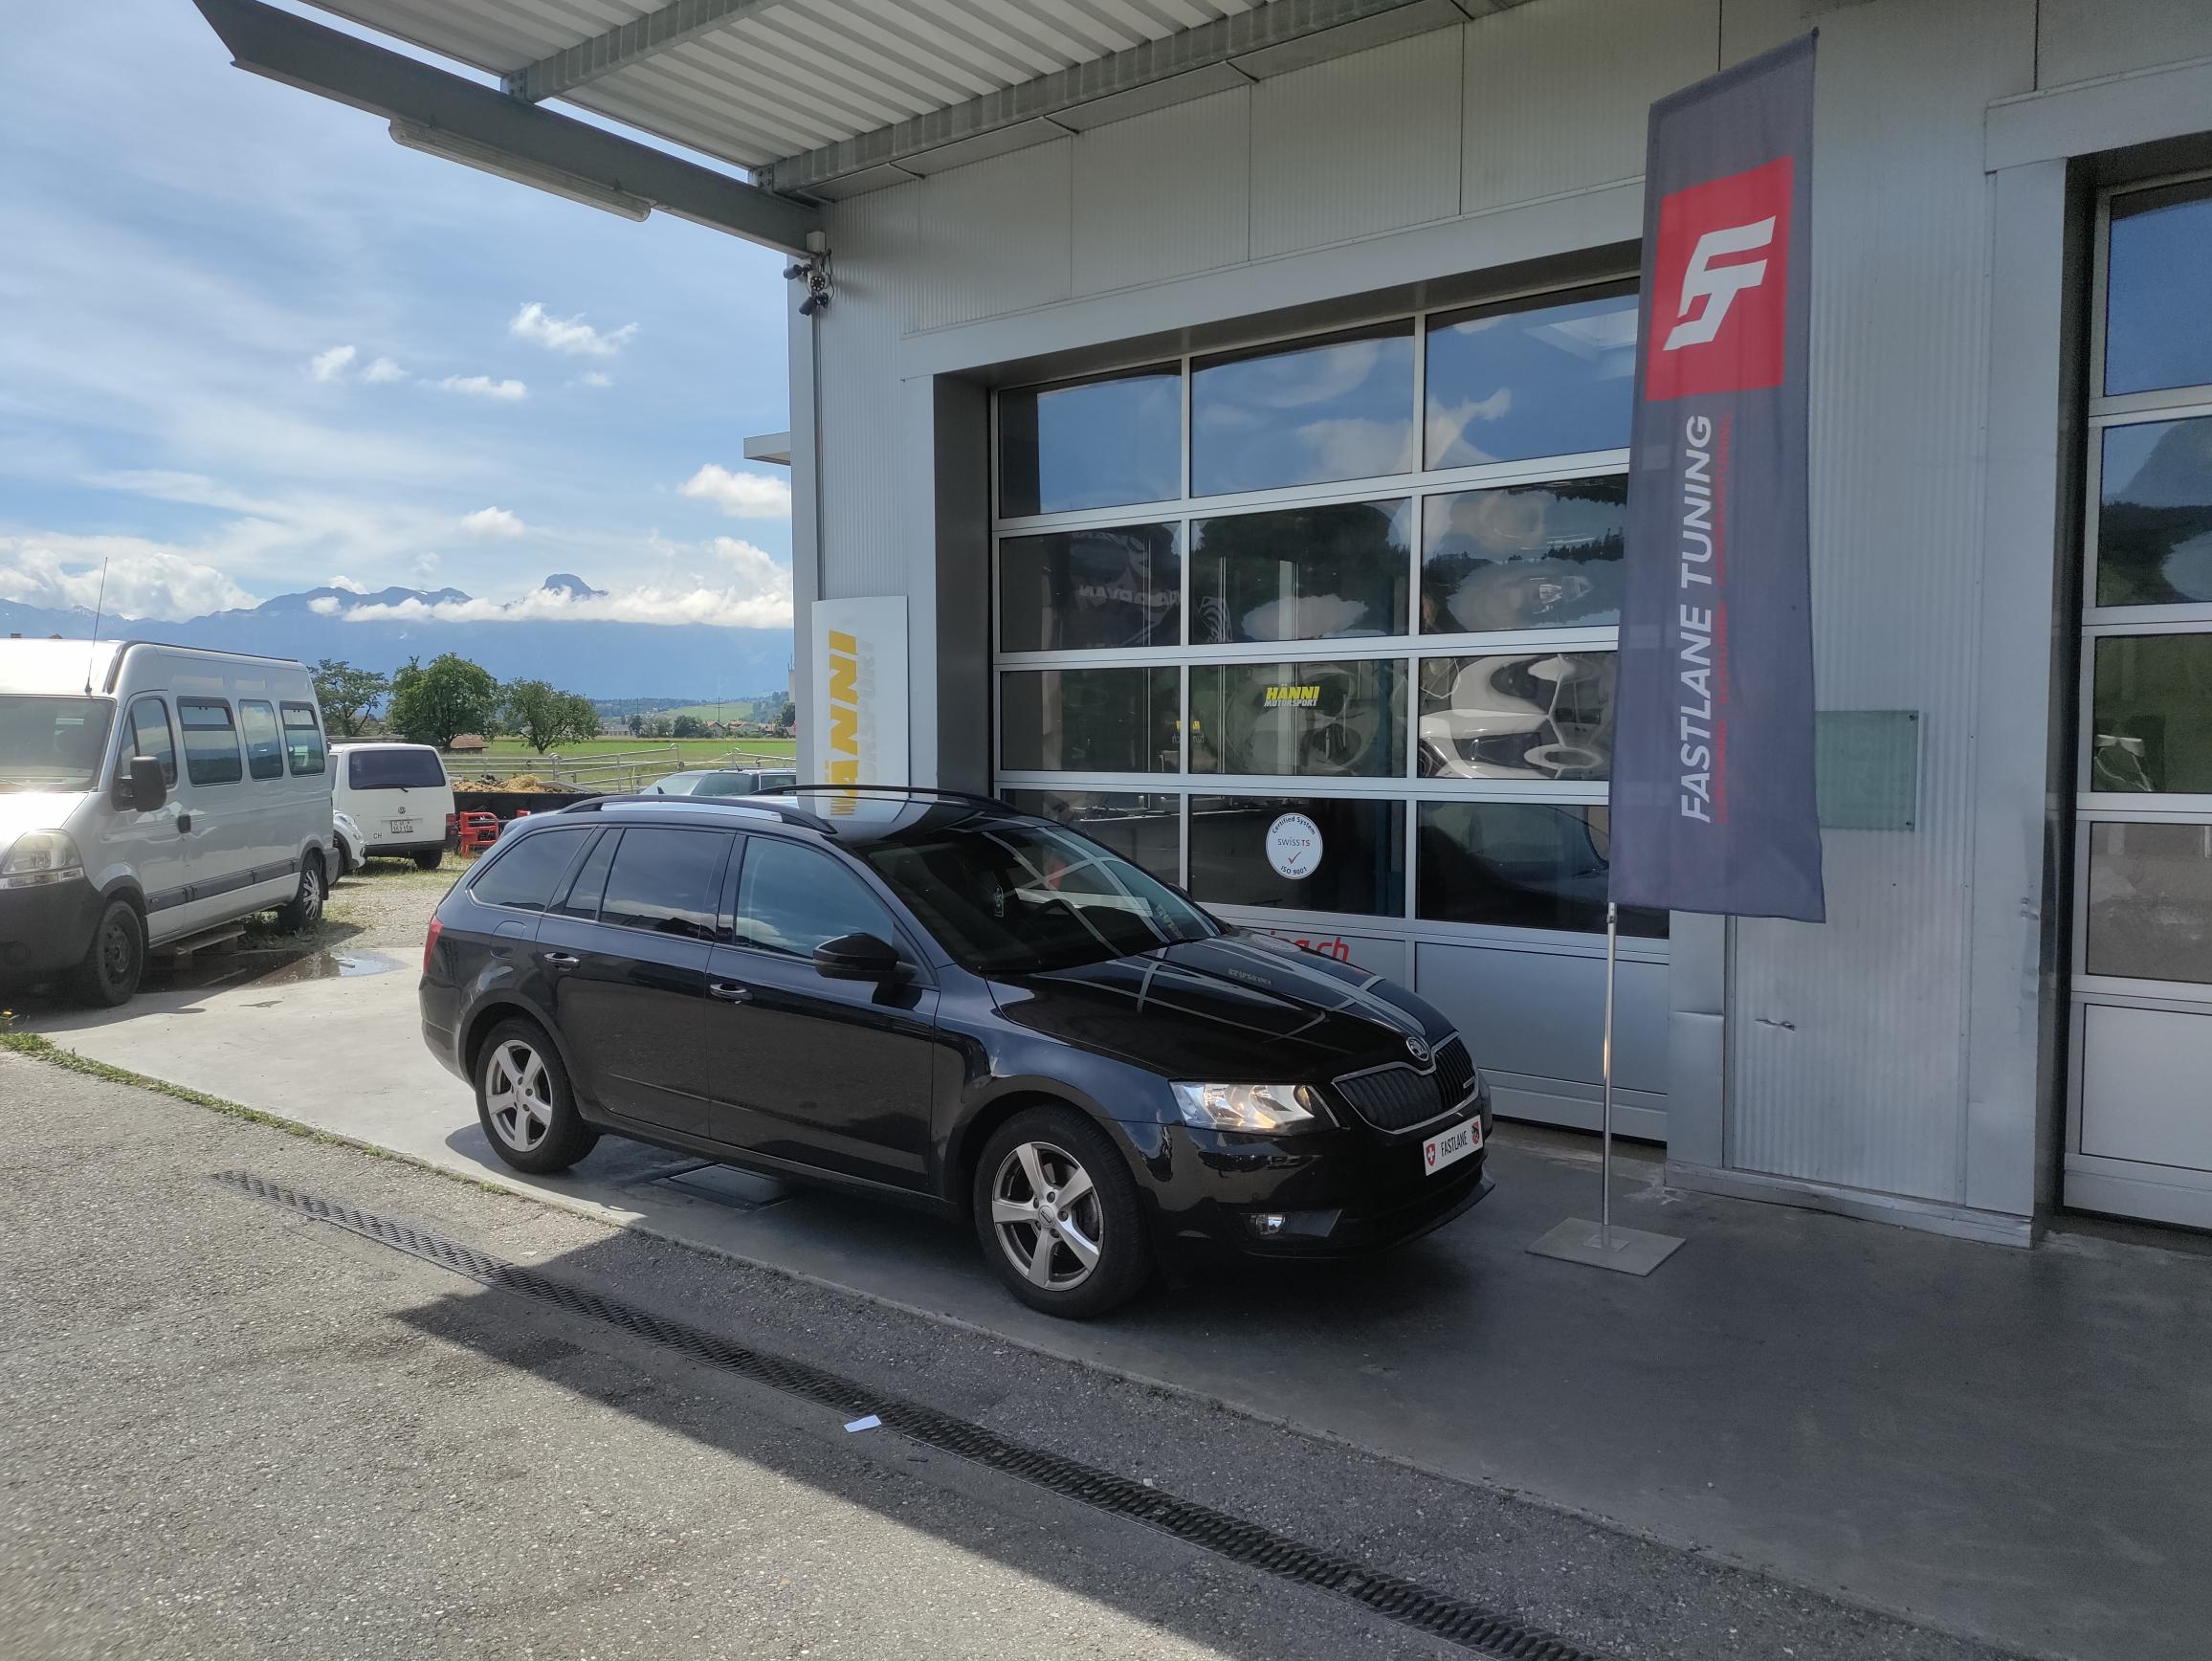 Ein schwarzer Skoda Octavia III 1.6 TDI greeline steht vor der Garage neben der Fastlane Tuning Schweiz Flagge